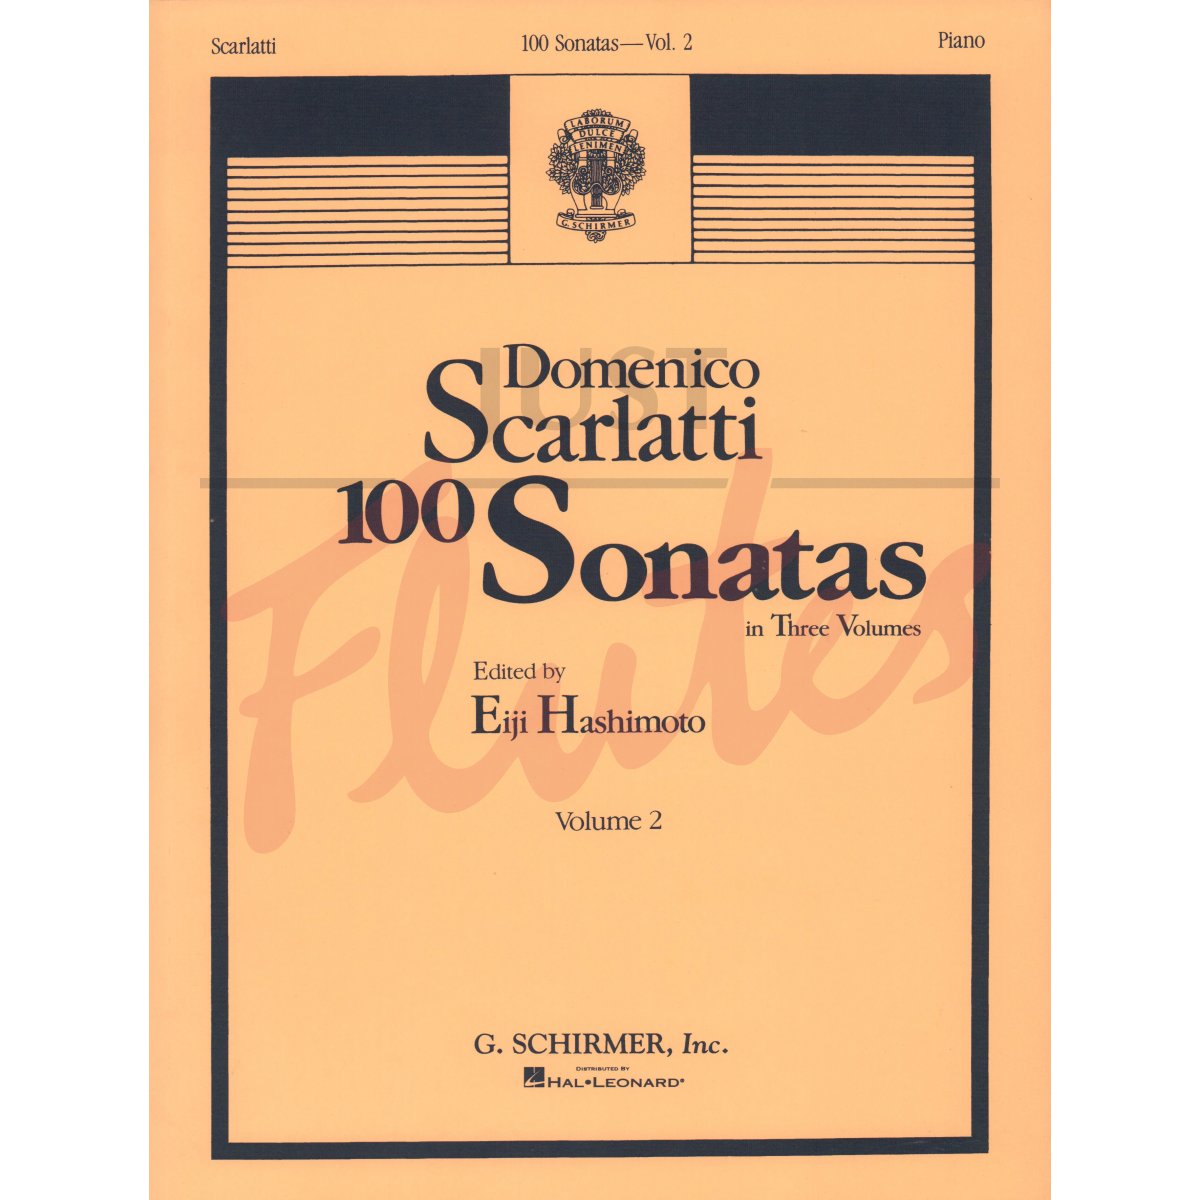 100 Sonatas in 3 Volumes - Vol.2 Sonatas 34-67